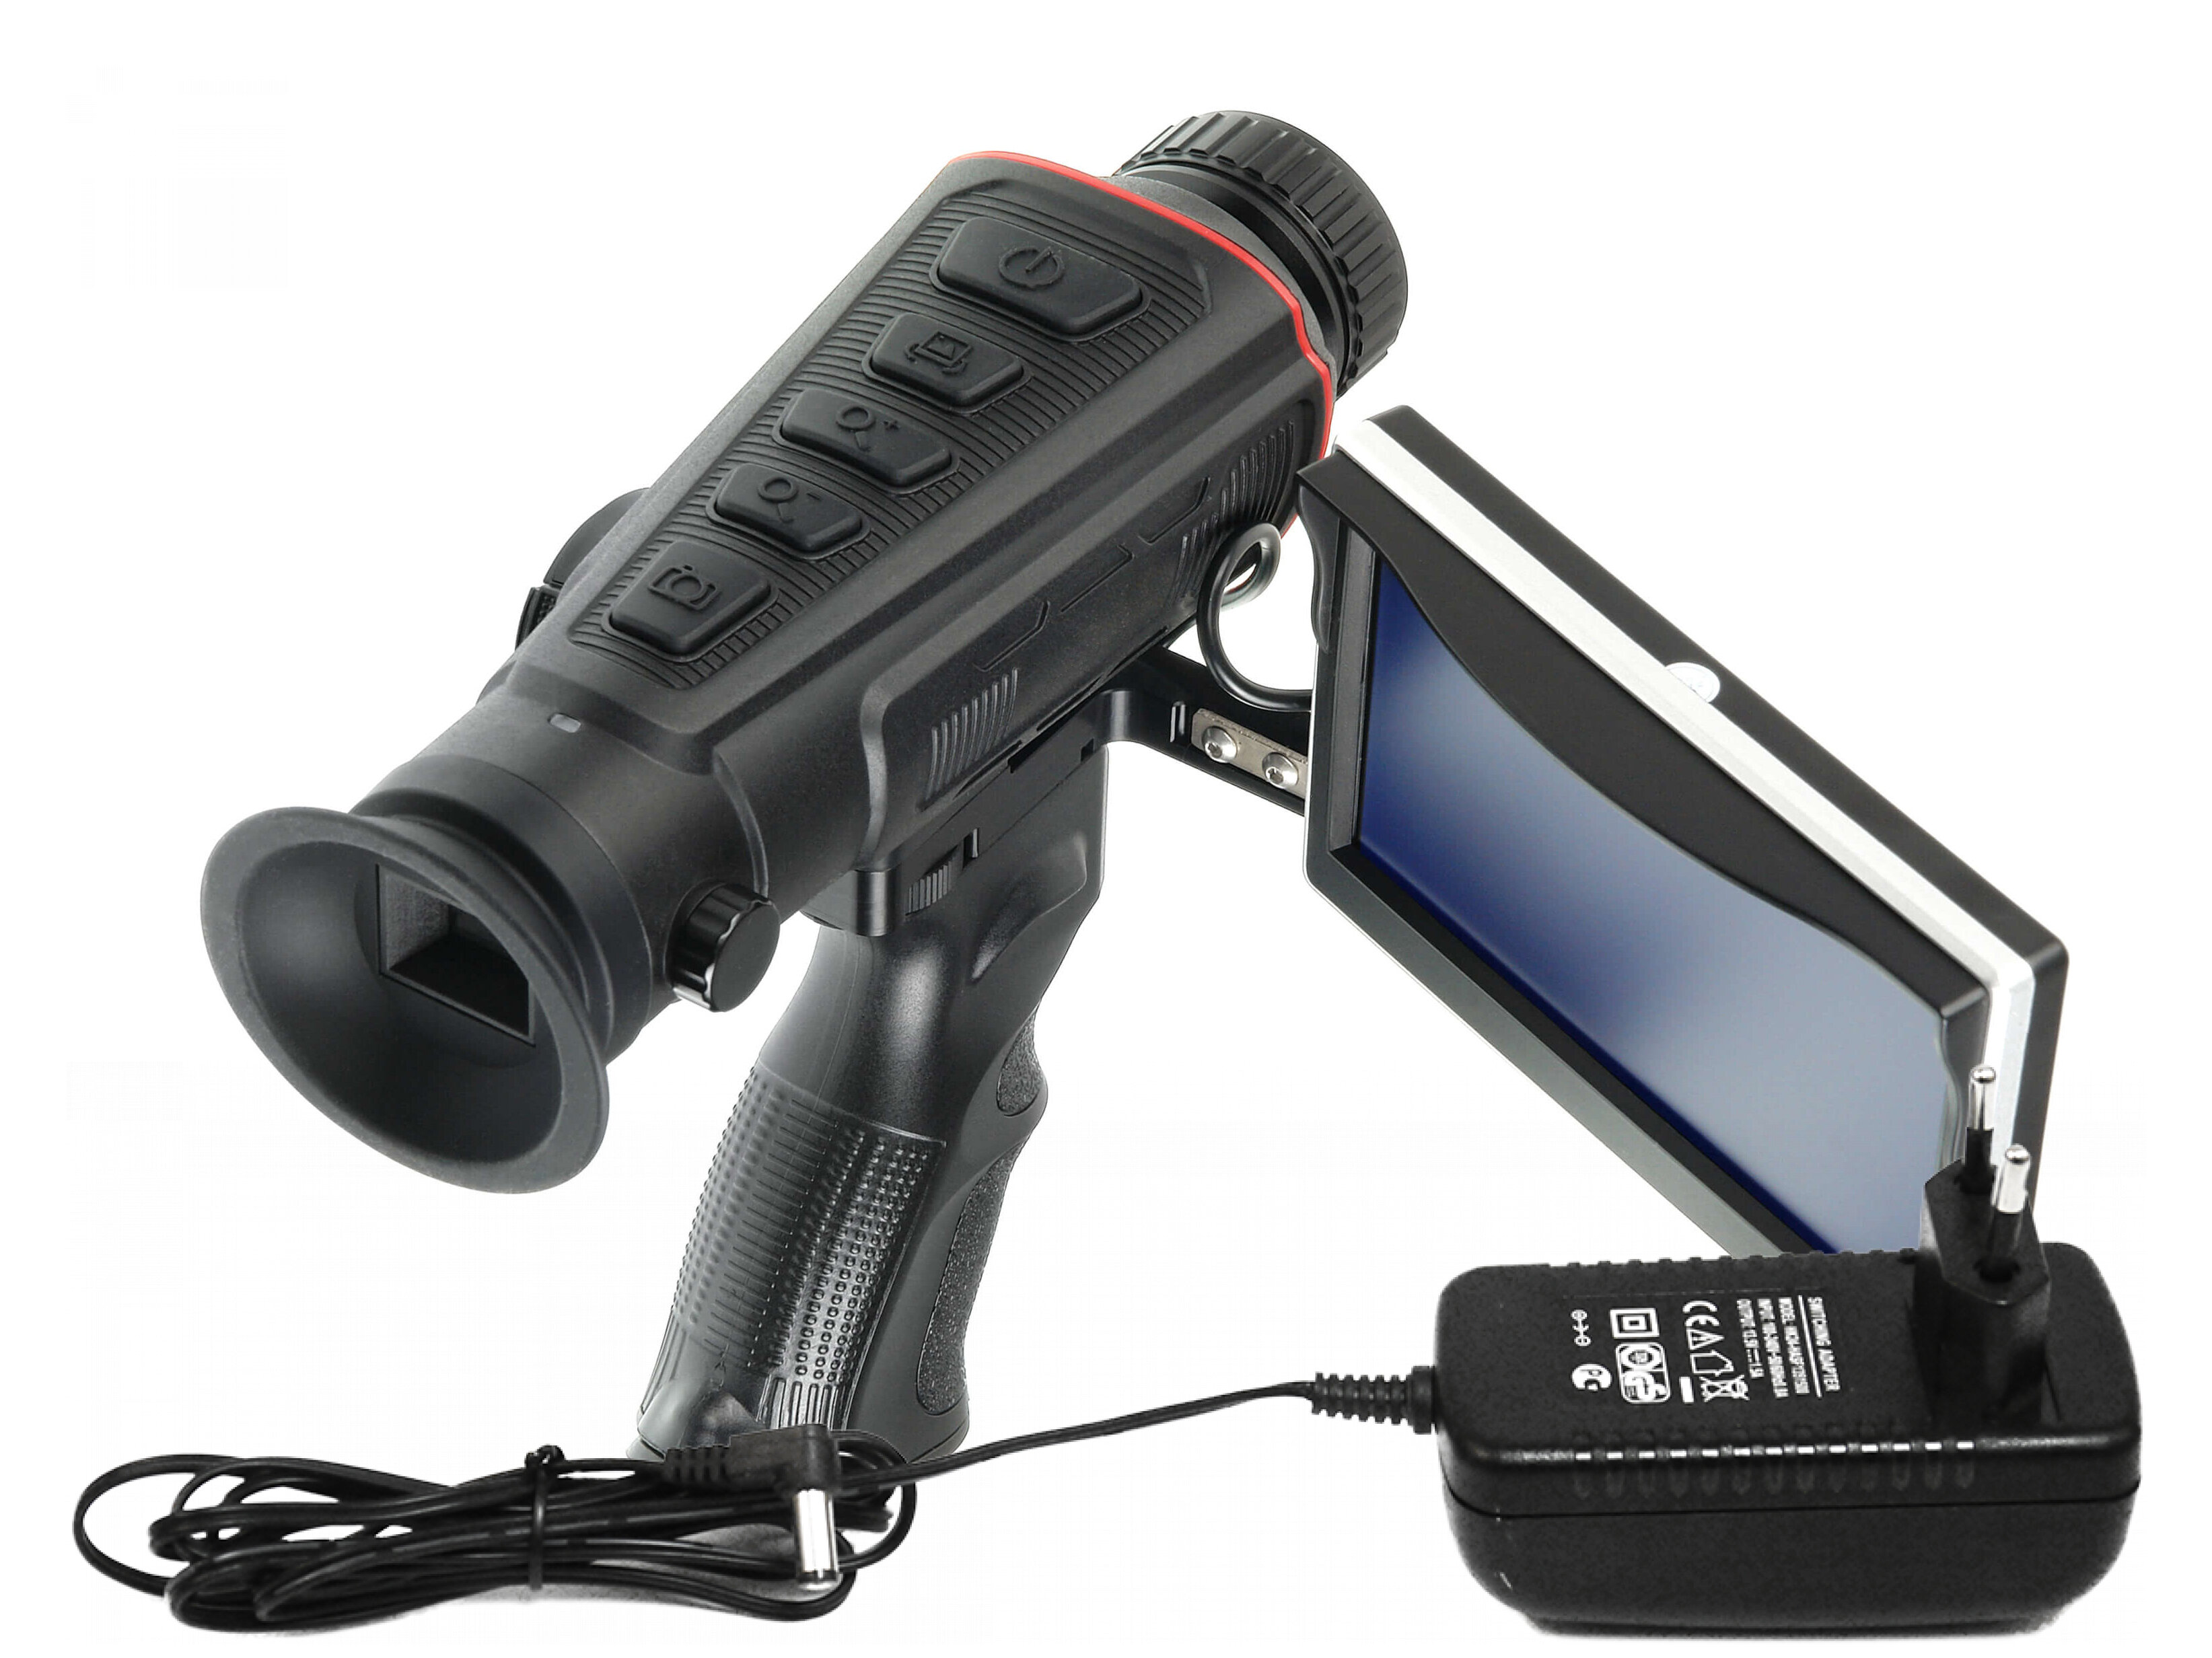 Охотничий прибор ночного видения с внешний монитором Модель: HTI-A4 (F1385EU). Тепловые монокуляры для фиксации теплового излучения